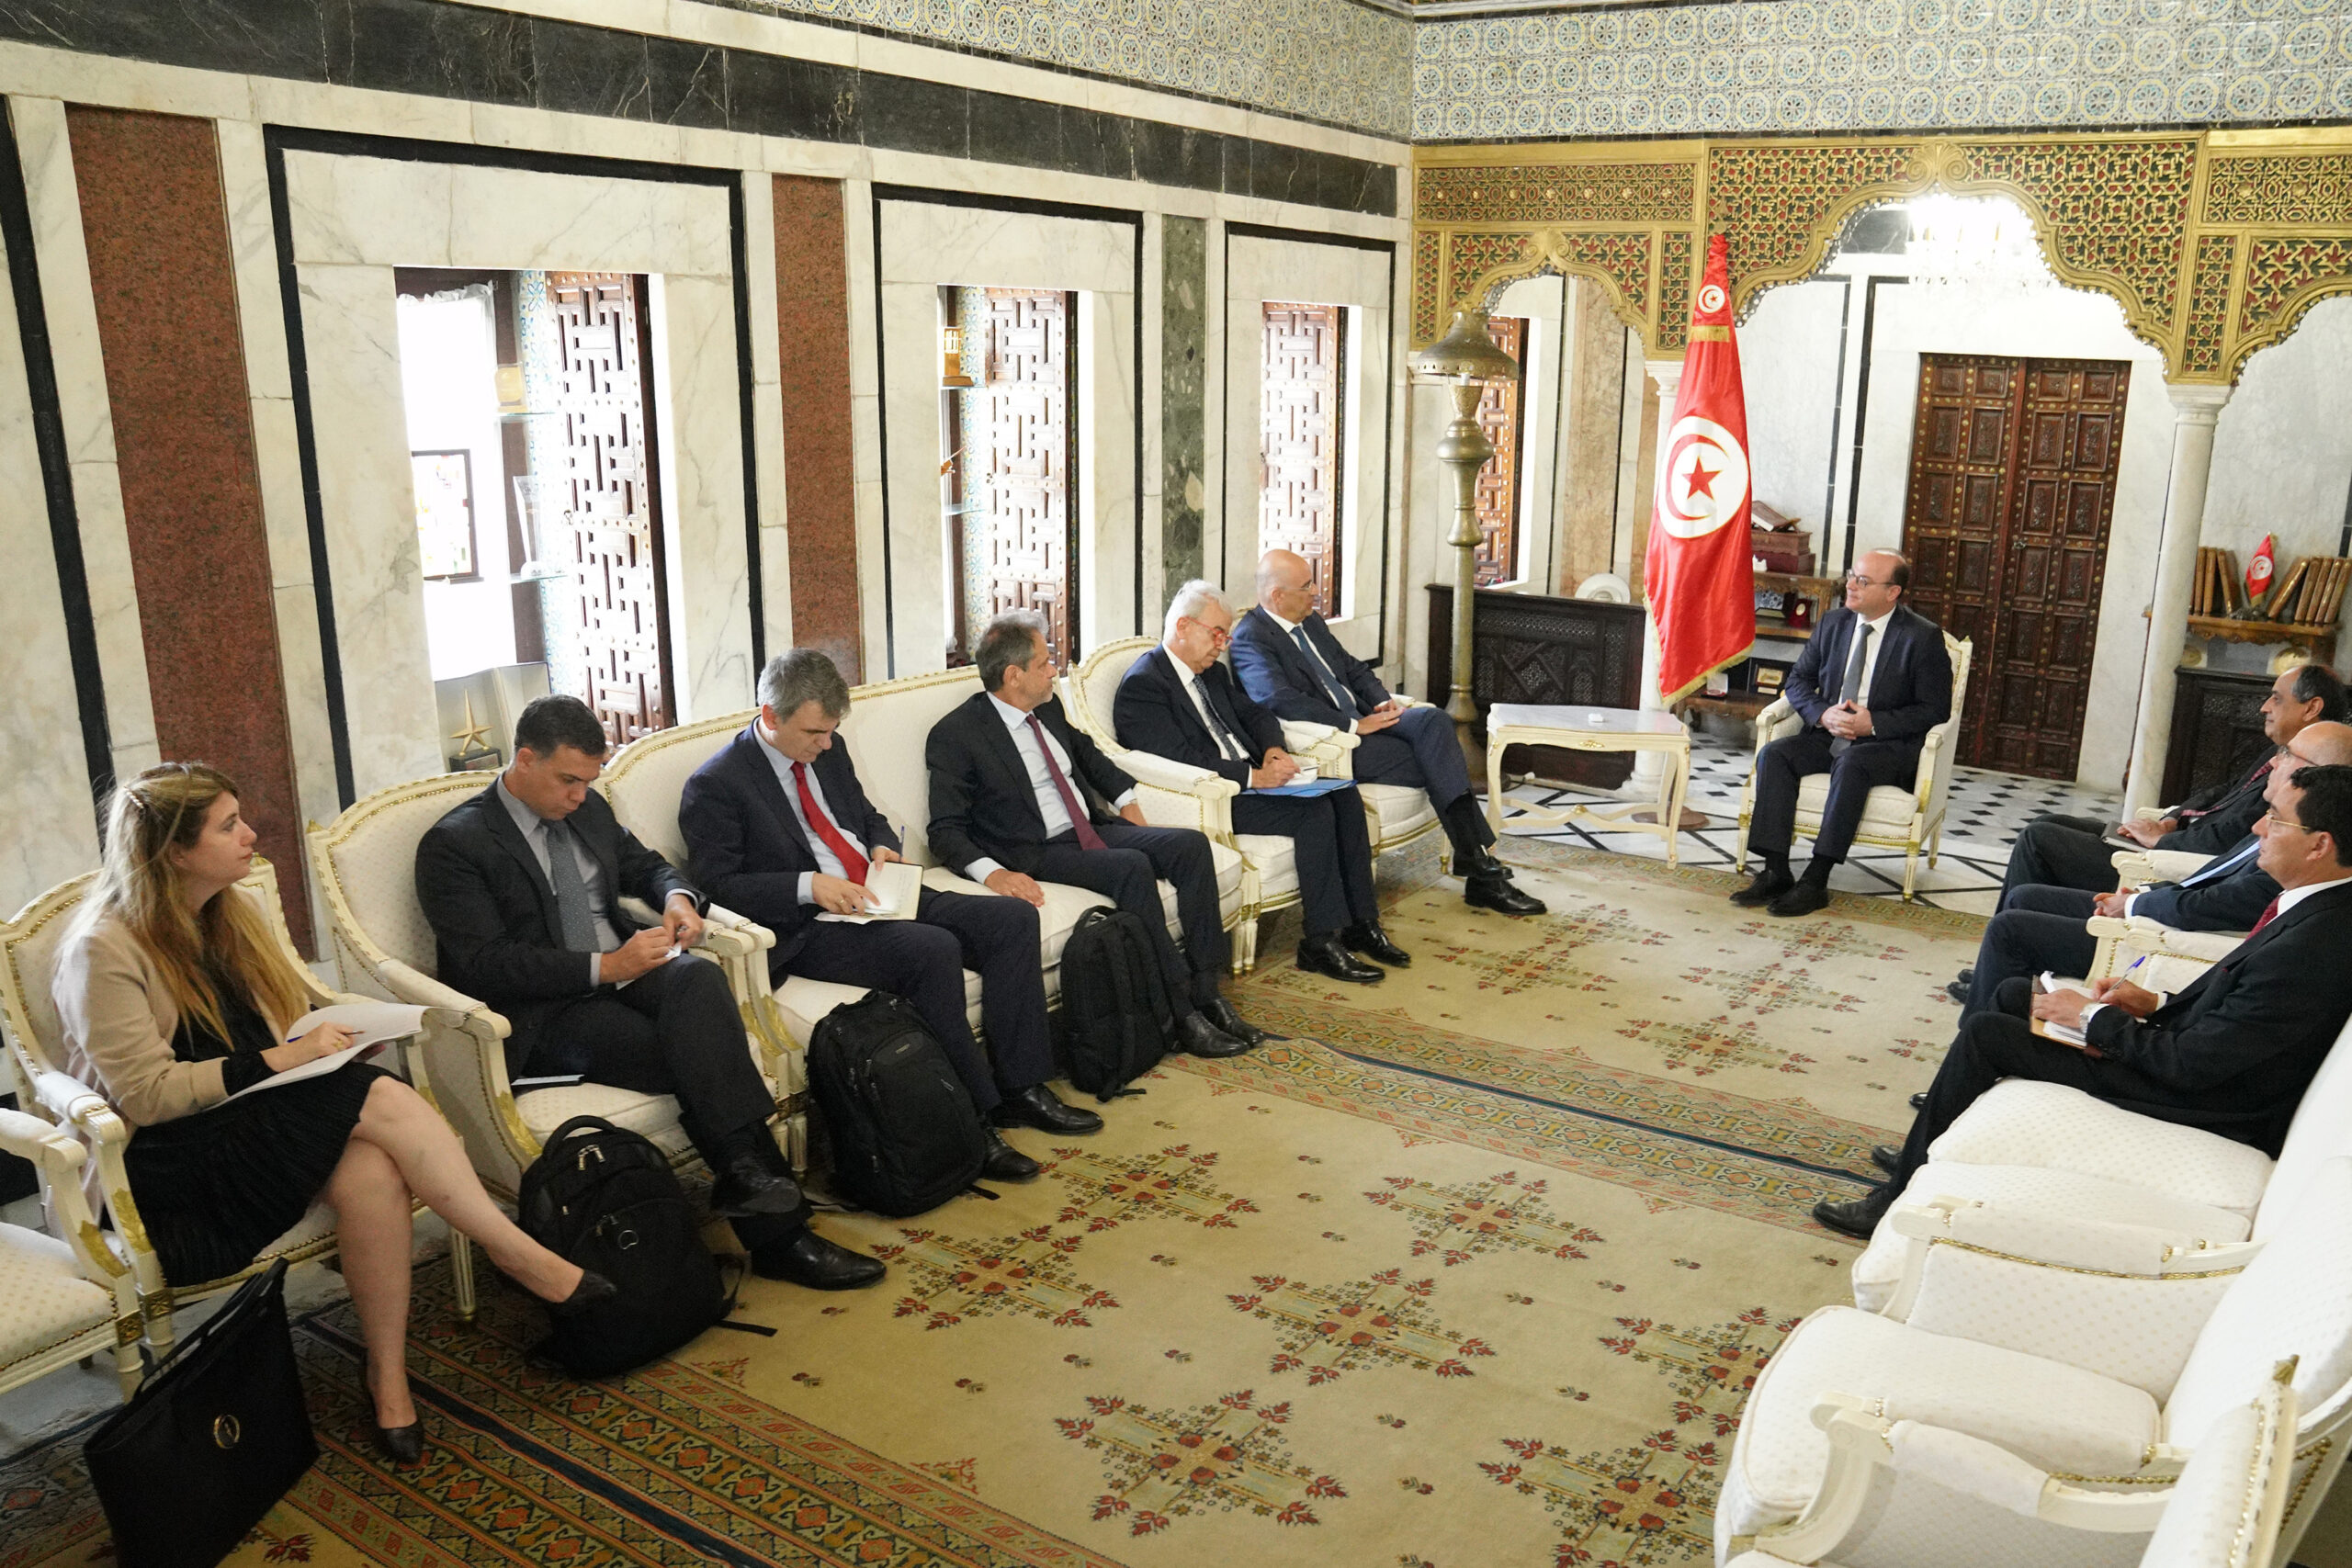 Επίσκεψη Υπουργού Εξωτερικών, Νίκου Δένδια, στην Τυνησία. Συνάντηση με τον Πρωθυπουργό, Elyes Fakhfakh (Τύνιδα, 29.06.2020)